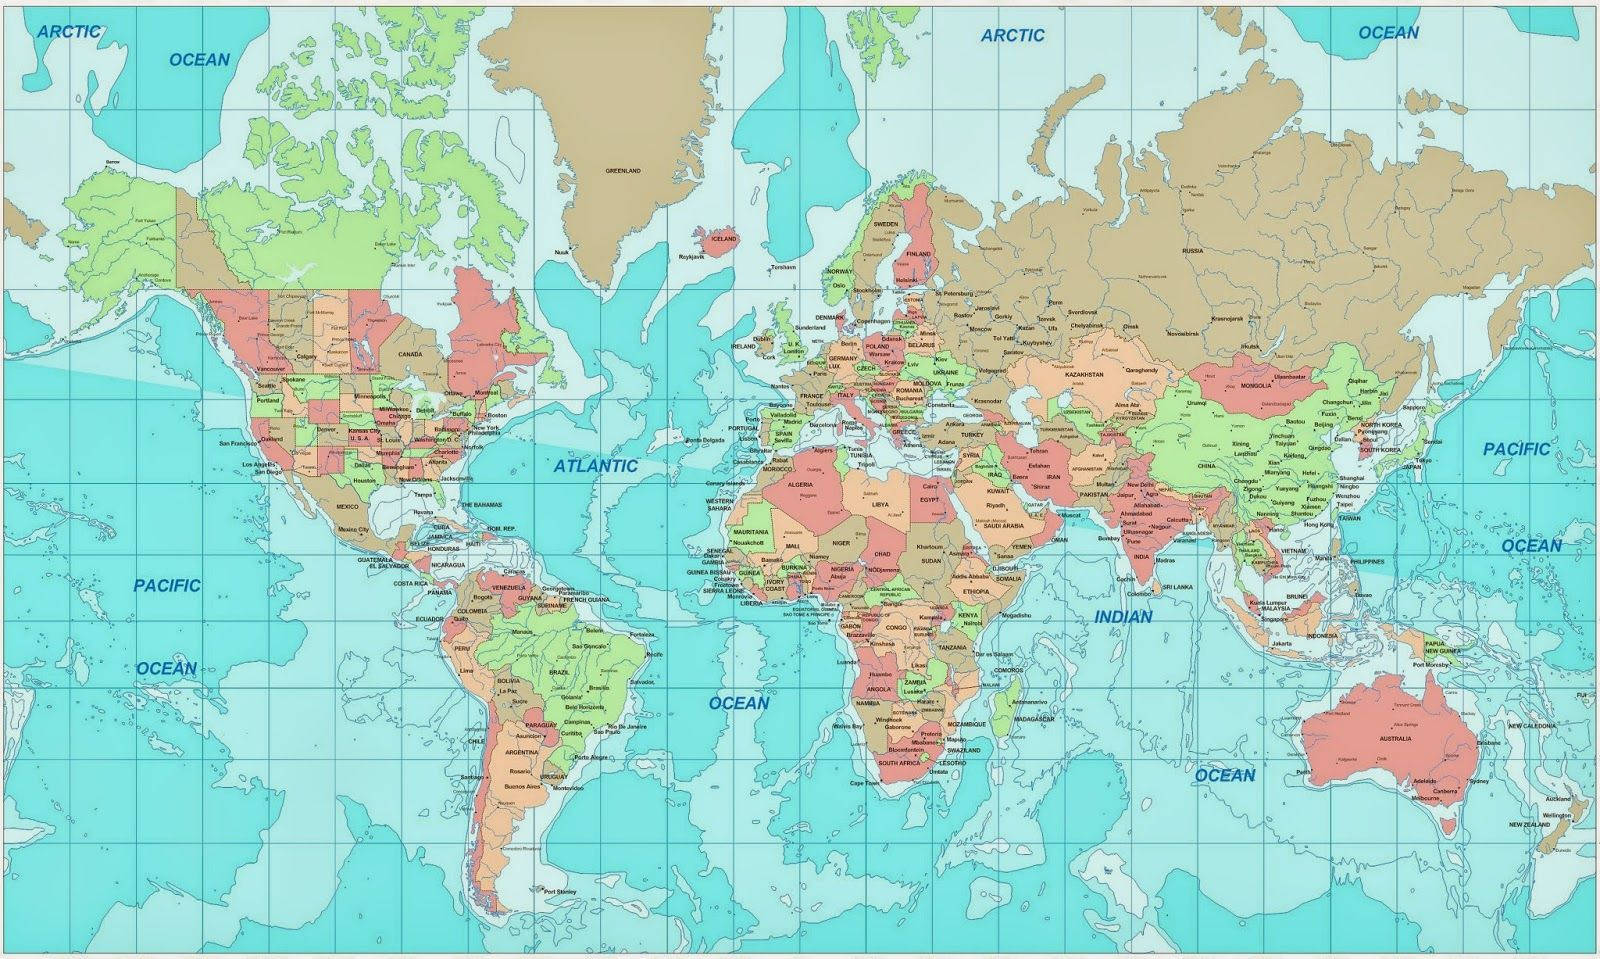 Download World Map Wallpaper Wallpaper